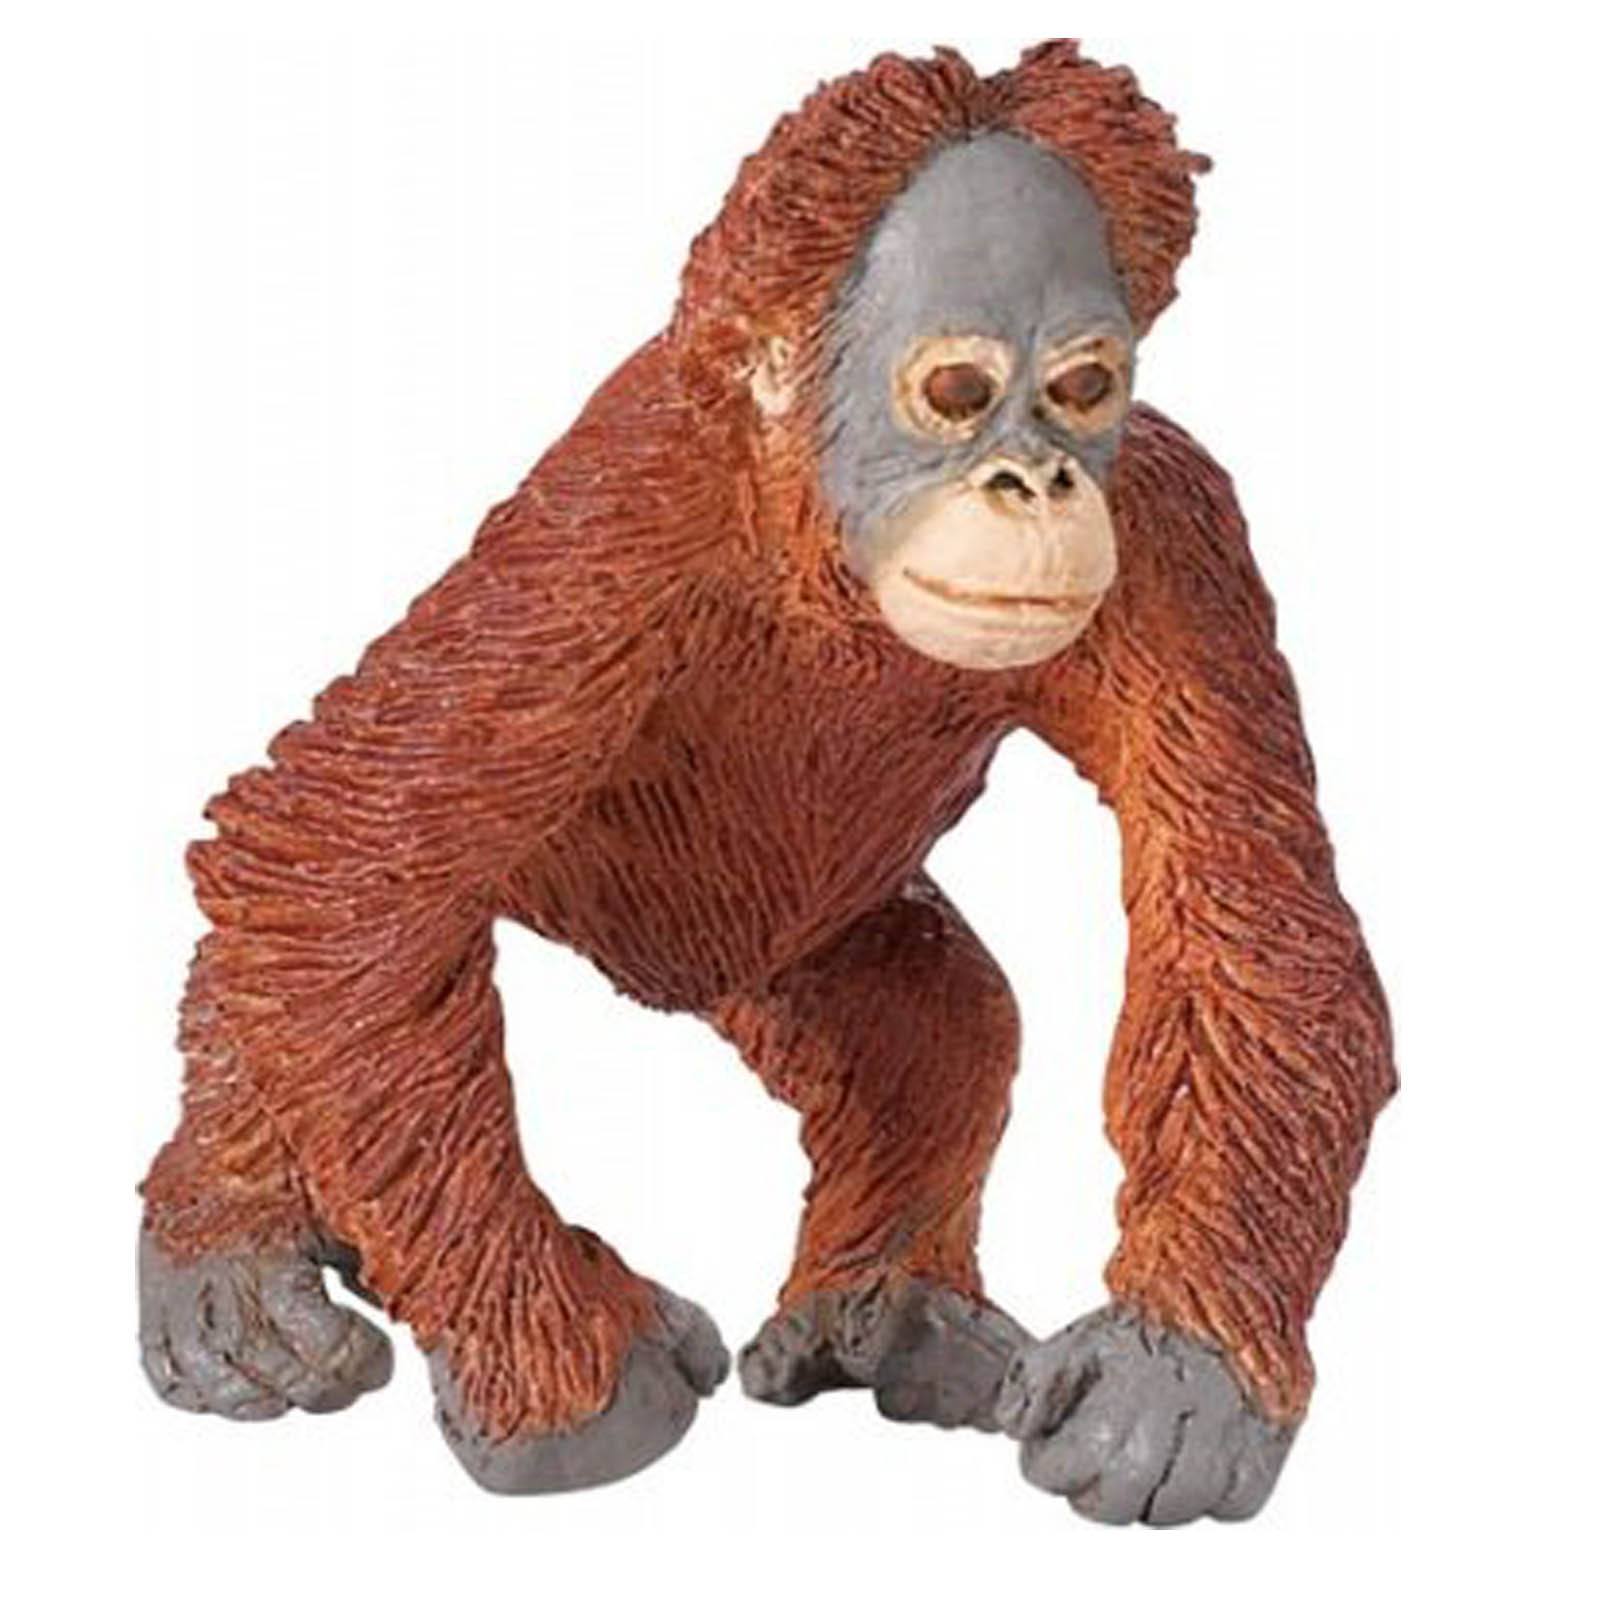 safari ltd orangutan